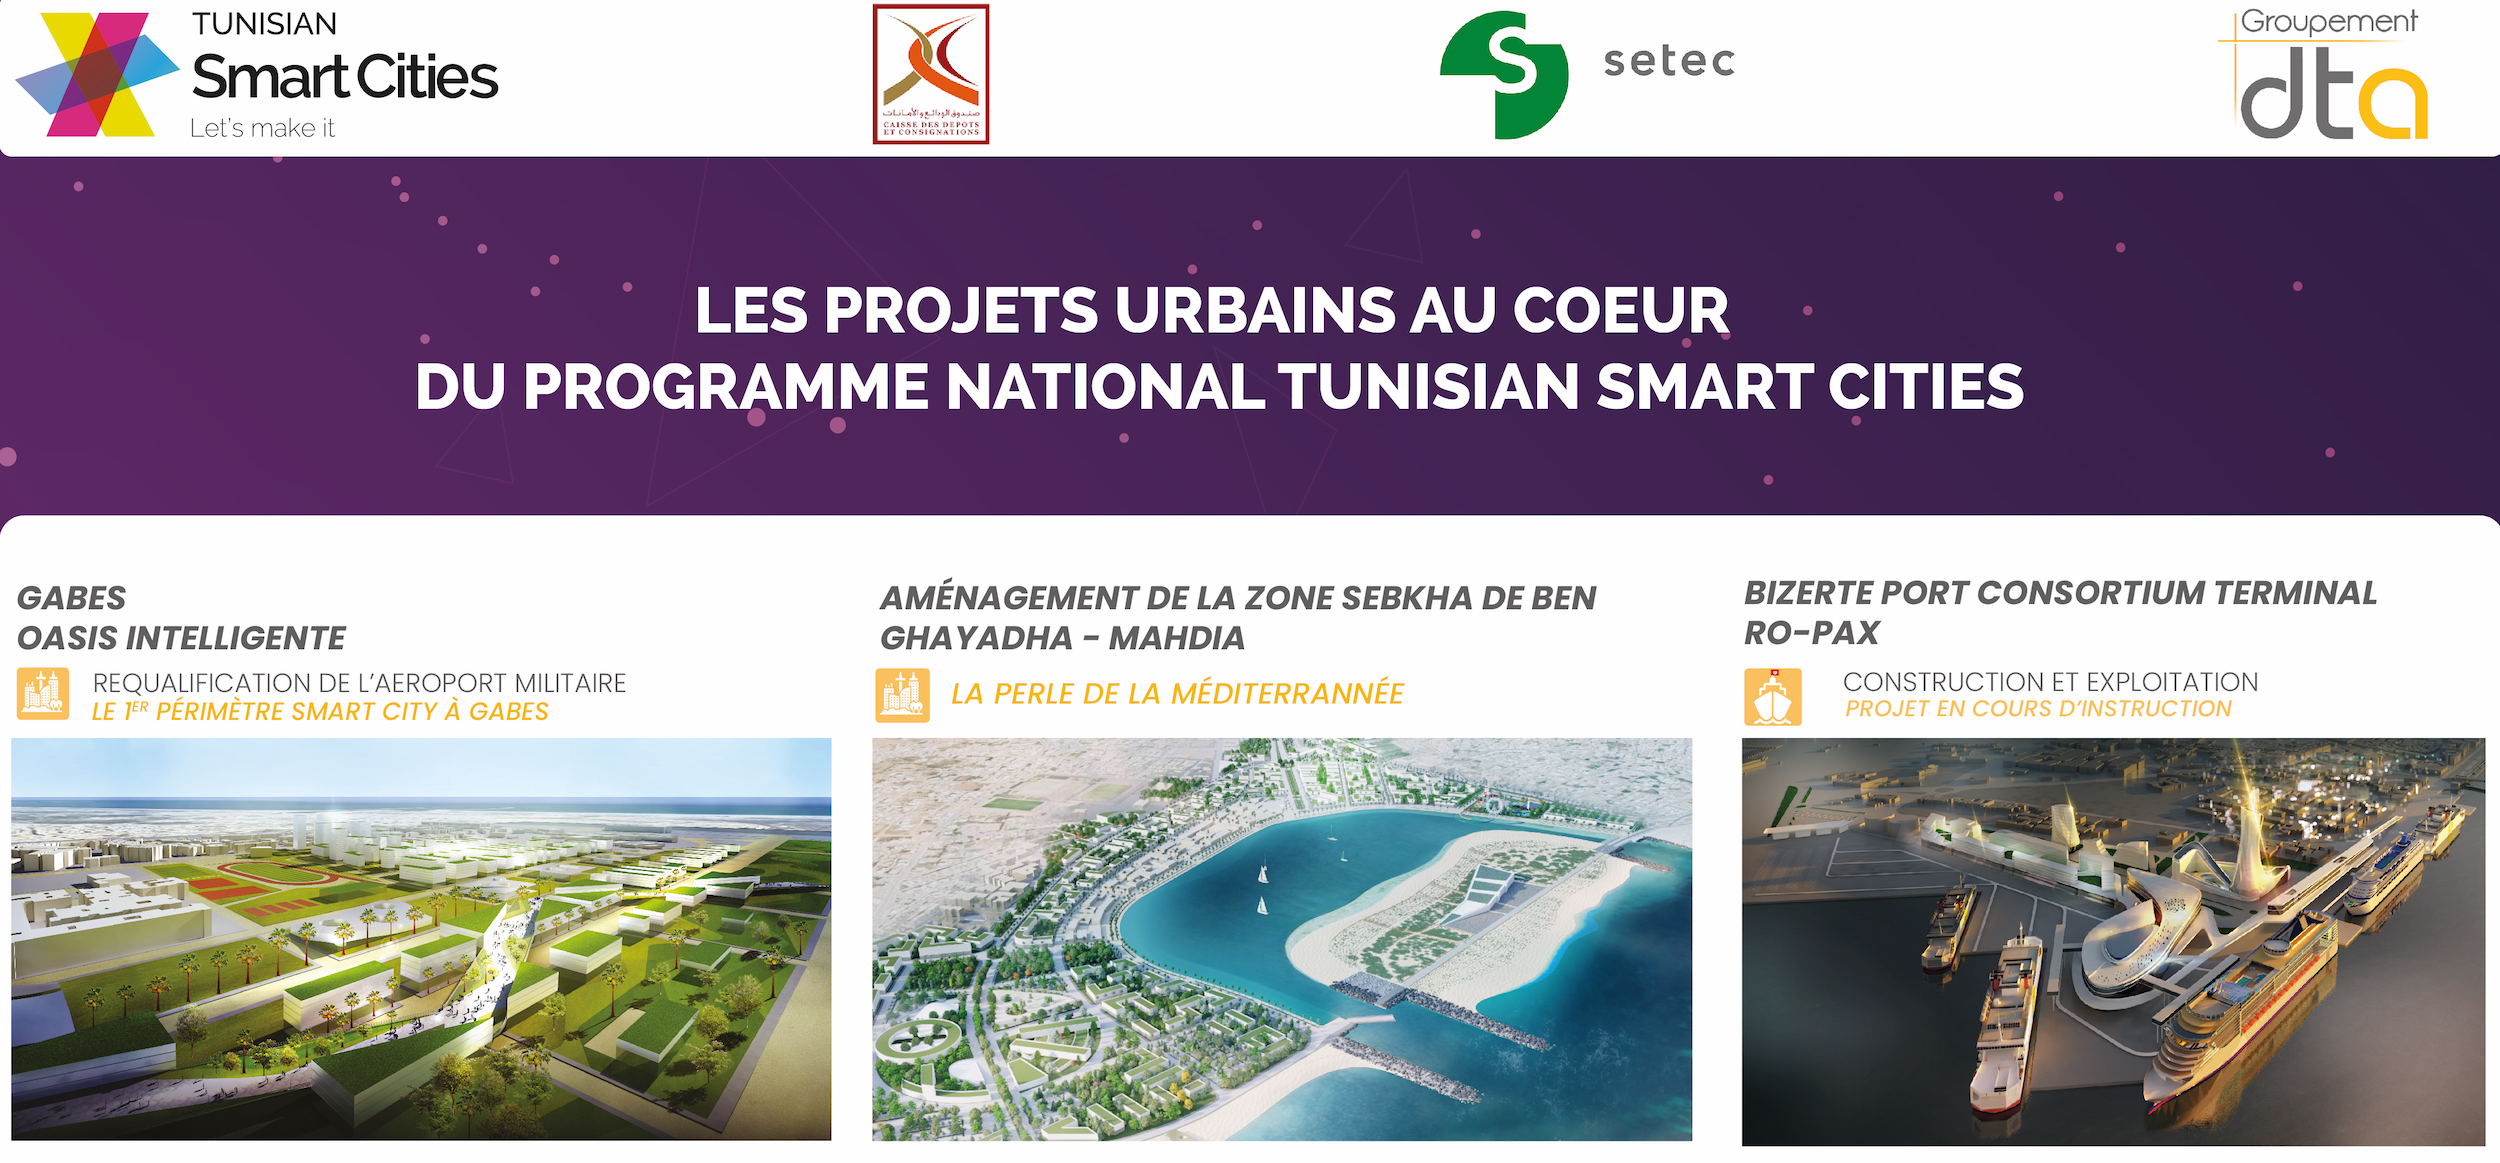 Les projets Urbains au cœur du programme National Tunisian Smart Cities